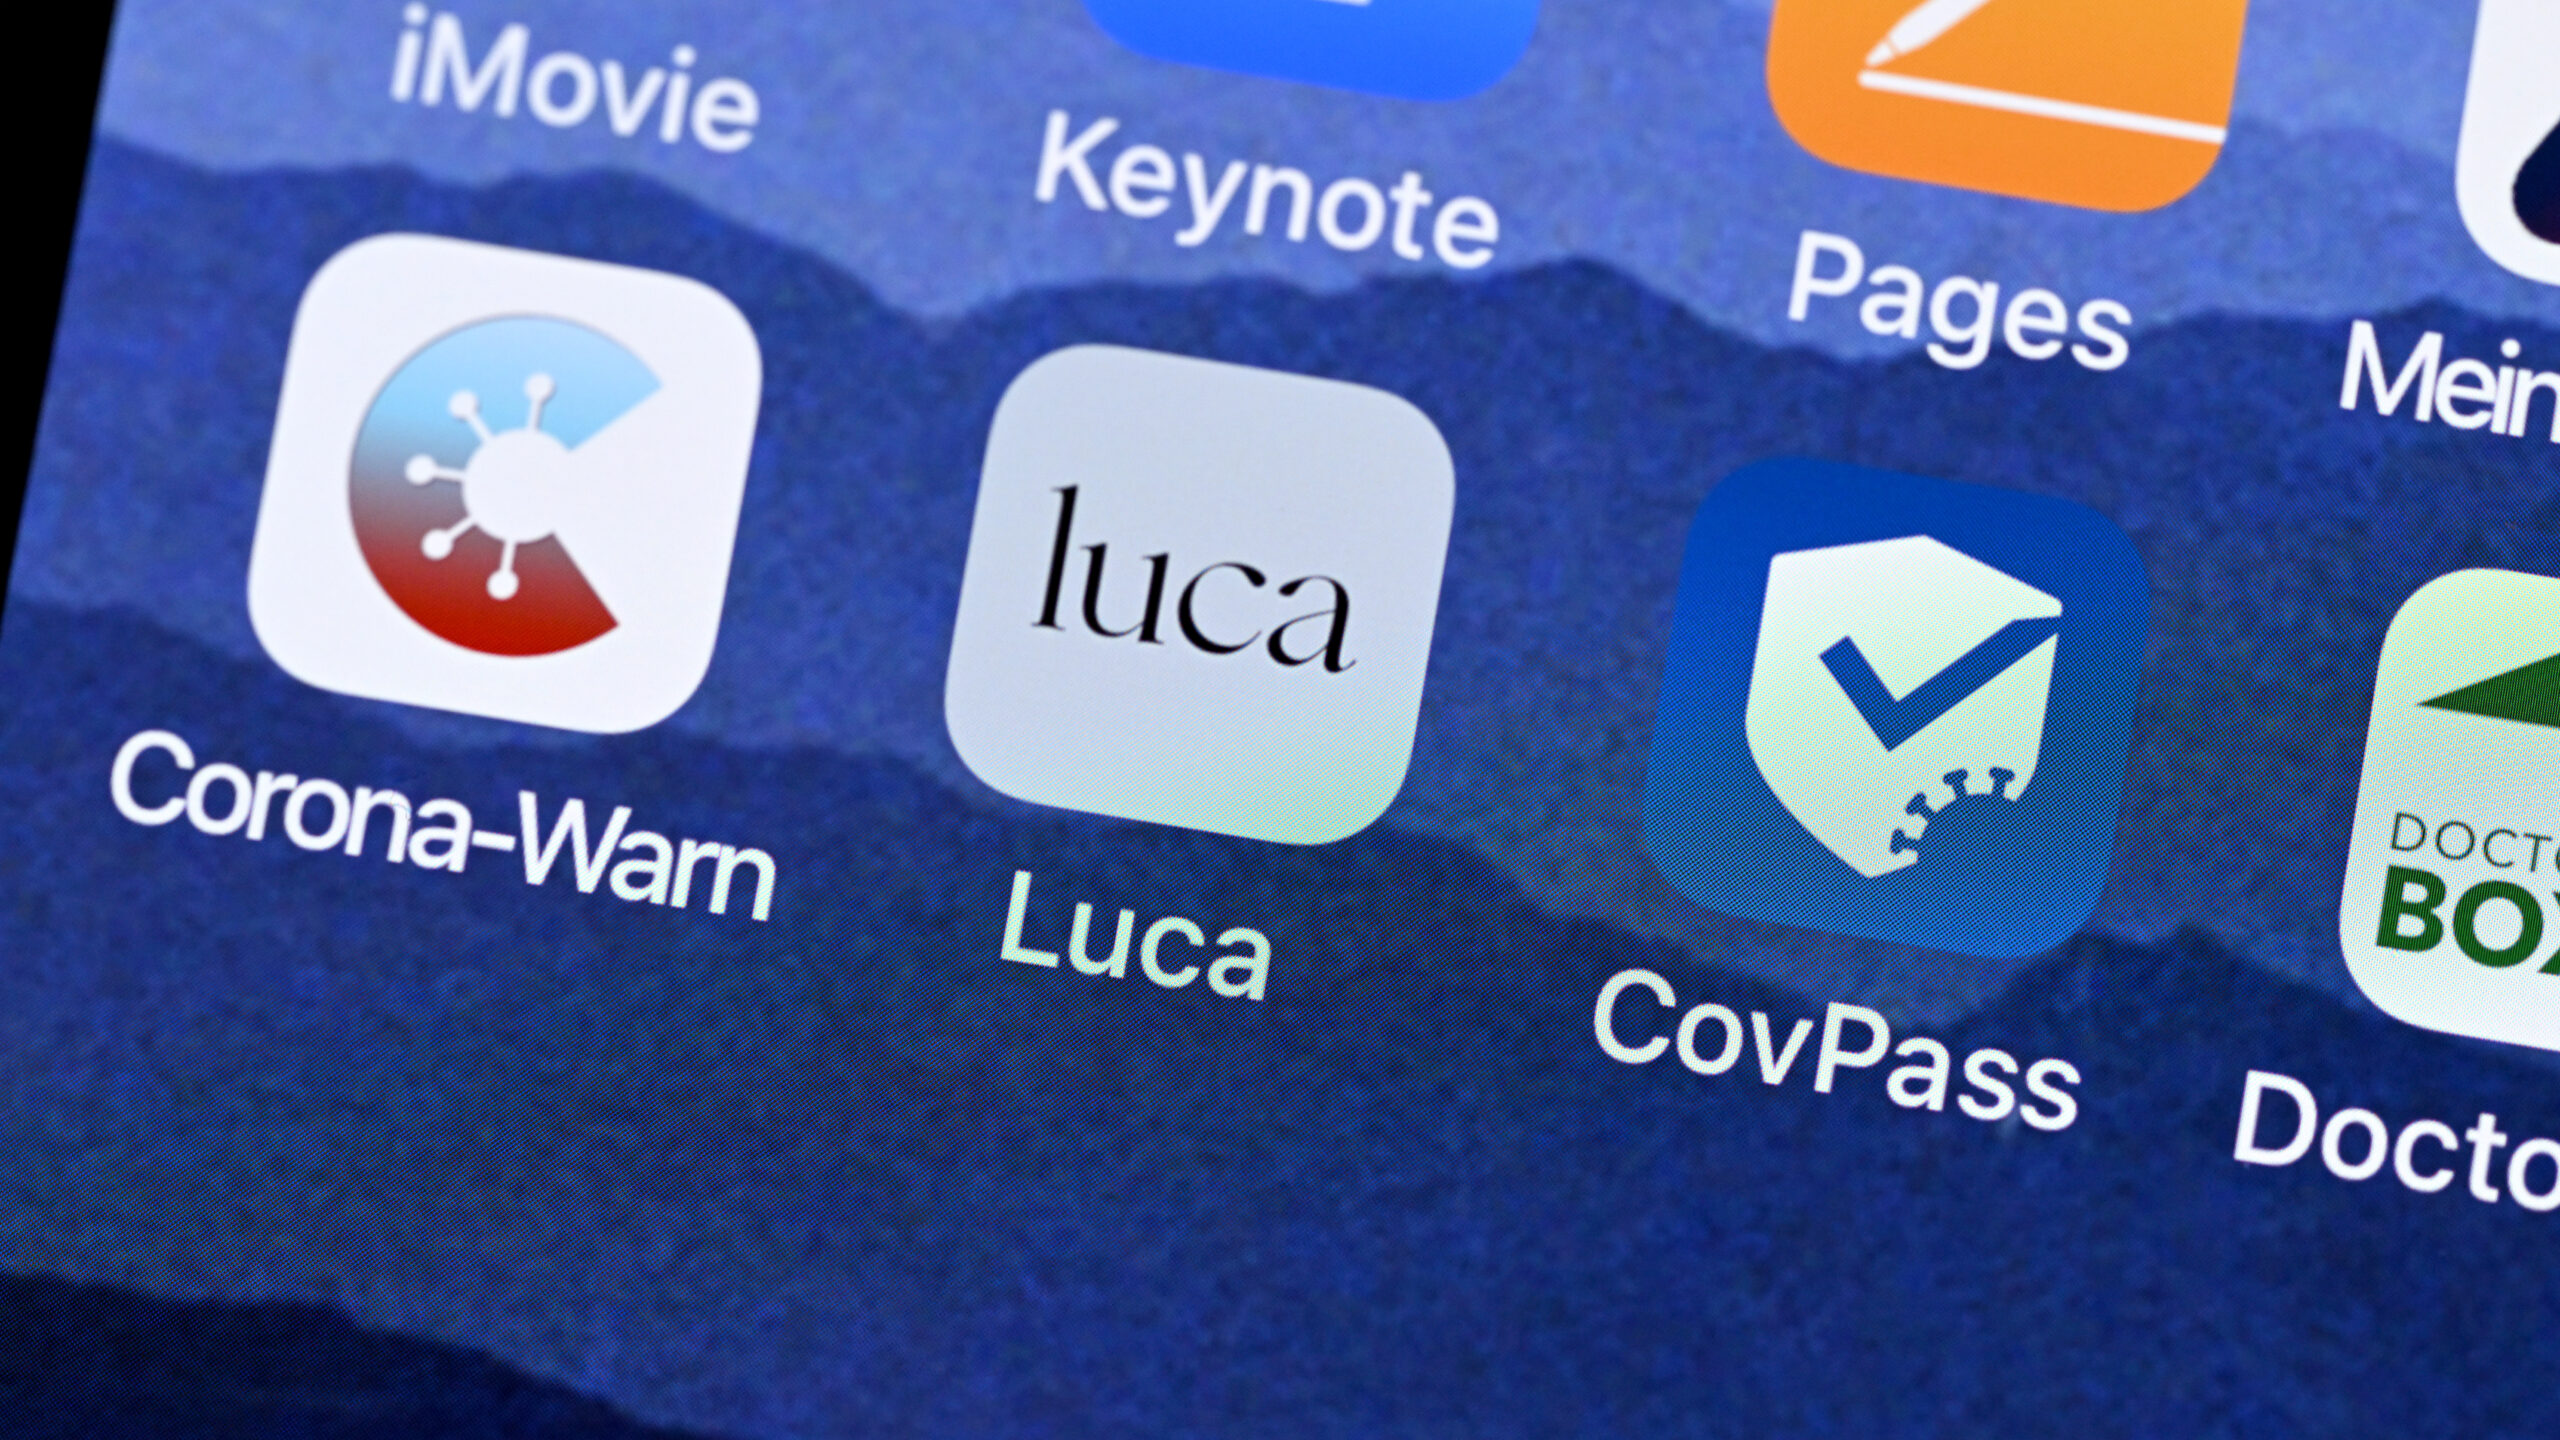 Das Startsymbol einer Luca-App ist neben den Symbolen von Corona-Warn-App und CovPass App auf einem Bildschirm eines Smartphones dargestellt.